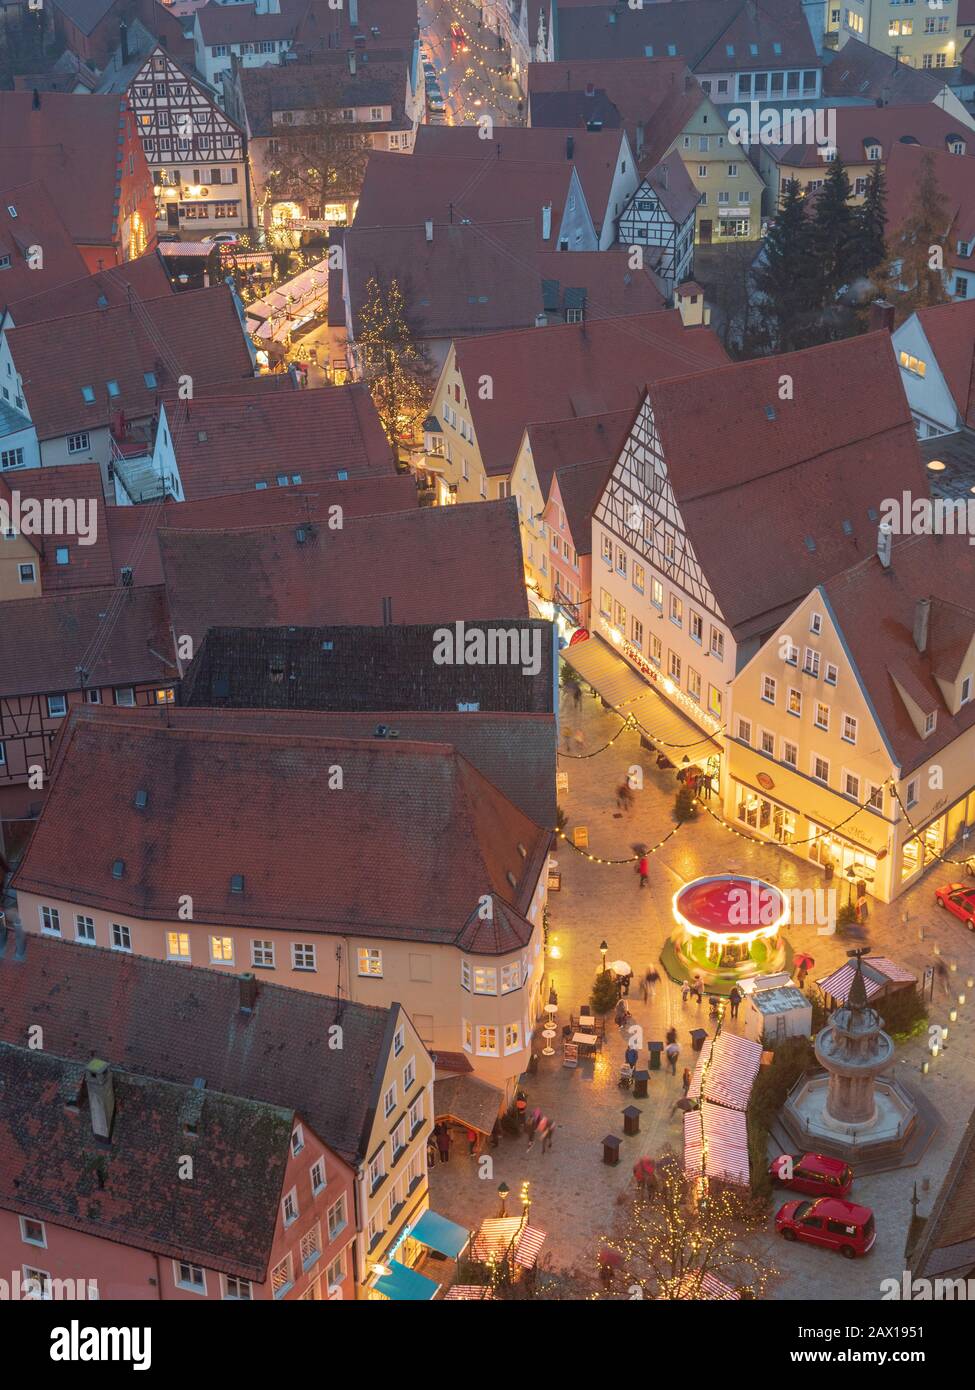 Blick auf Altstadt mit Weihnachtsmarkt bei Dämmerung, Nördlingen, Franken, Bayern, Deutschland | view of old town and Christmas Market at dusk, Noerdl Stock Photo